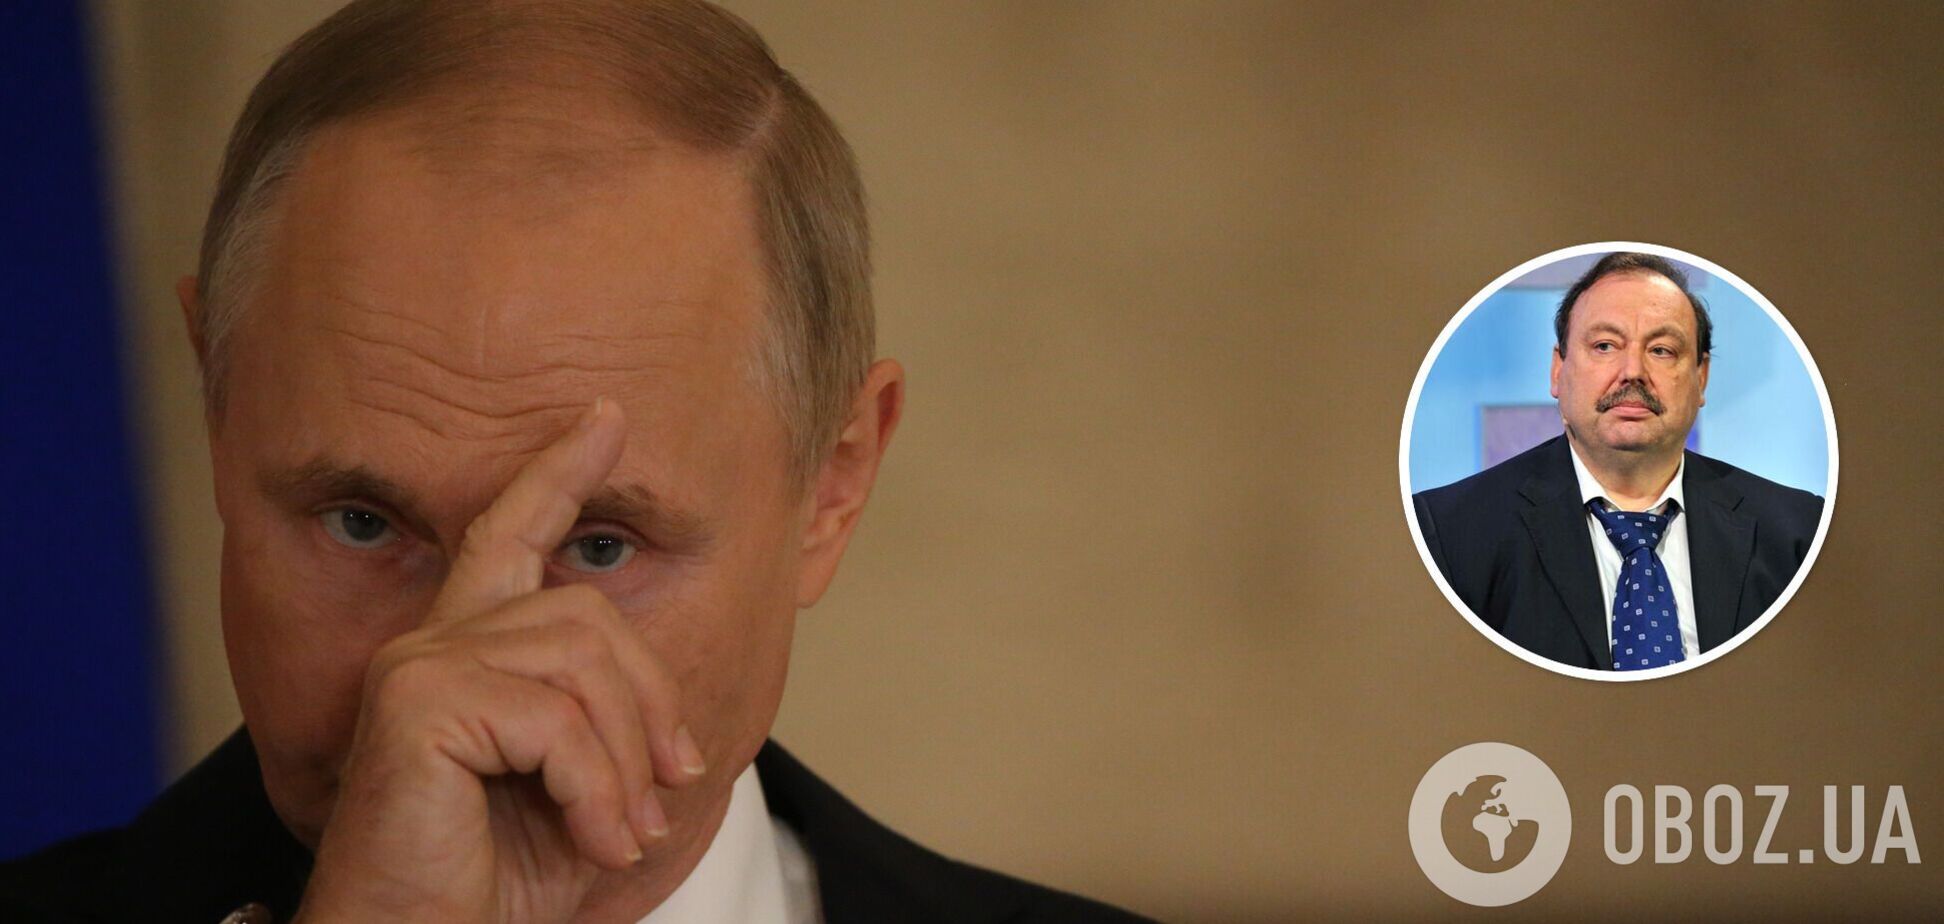 Оточення може обміняти Путіна на гарантії Заходу: опозиціонер Гудков назвав ймовірні сценарії 